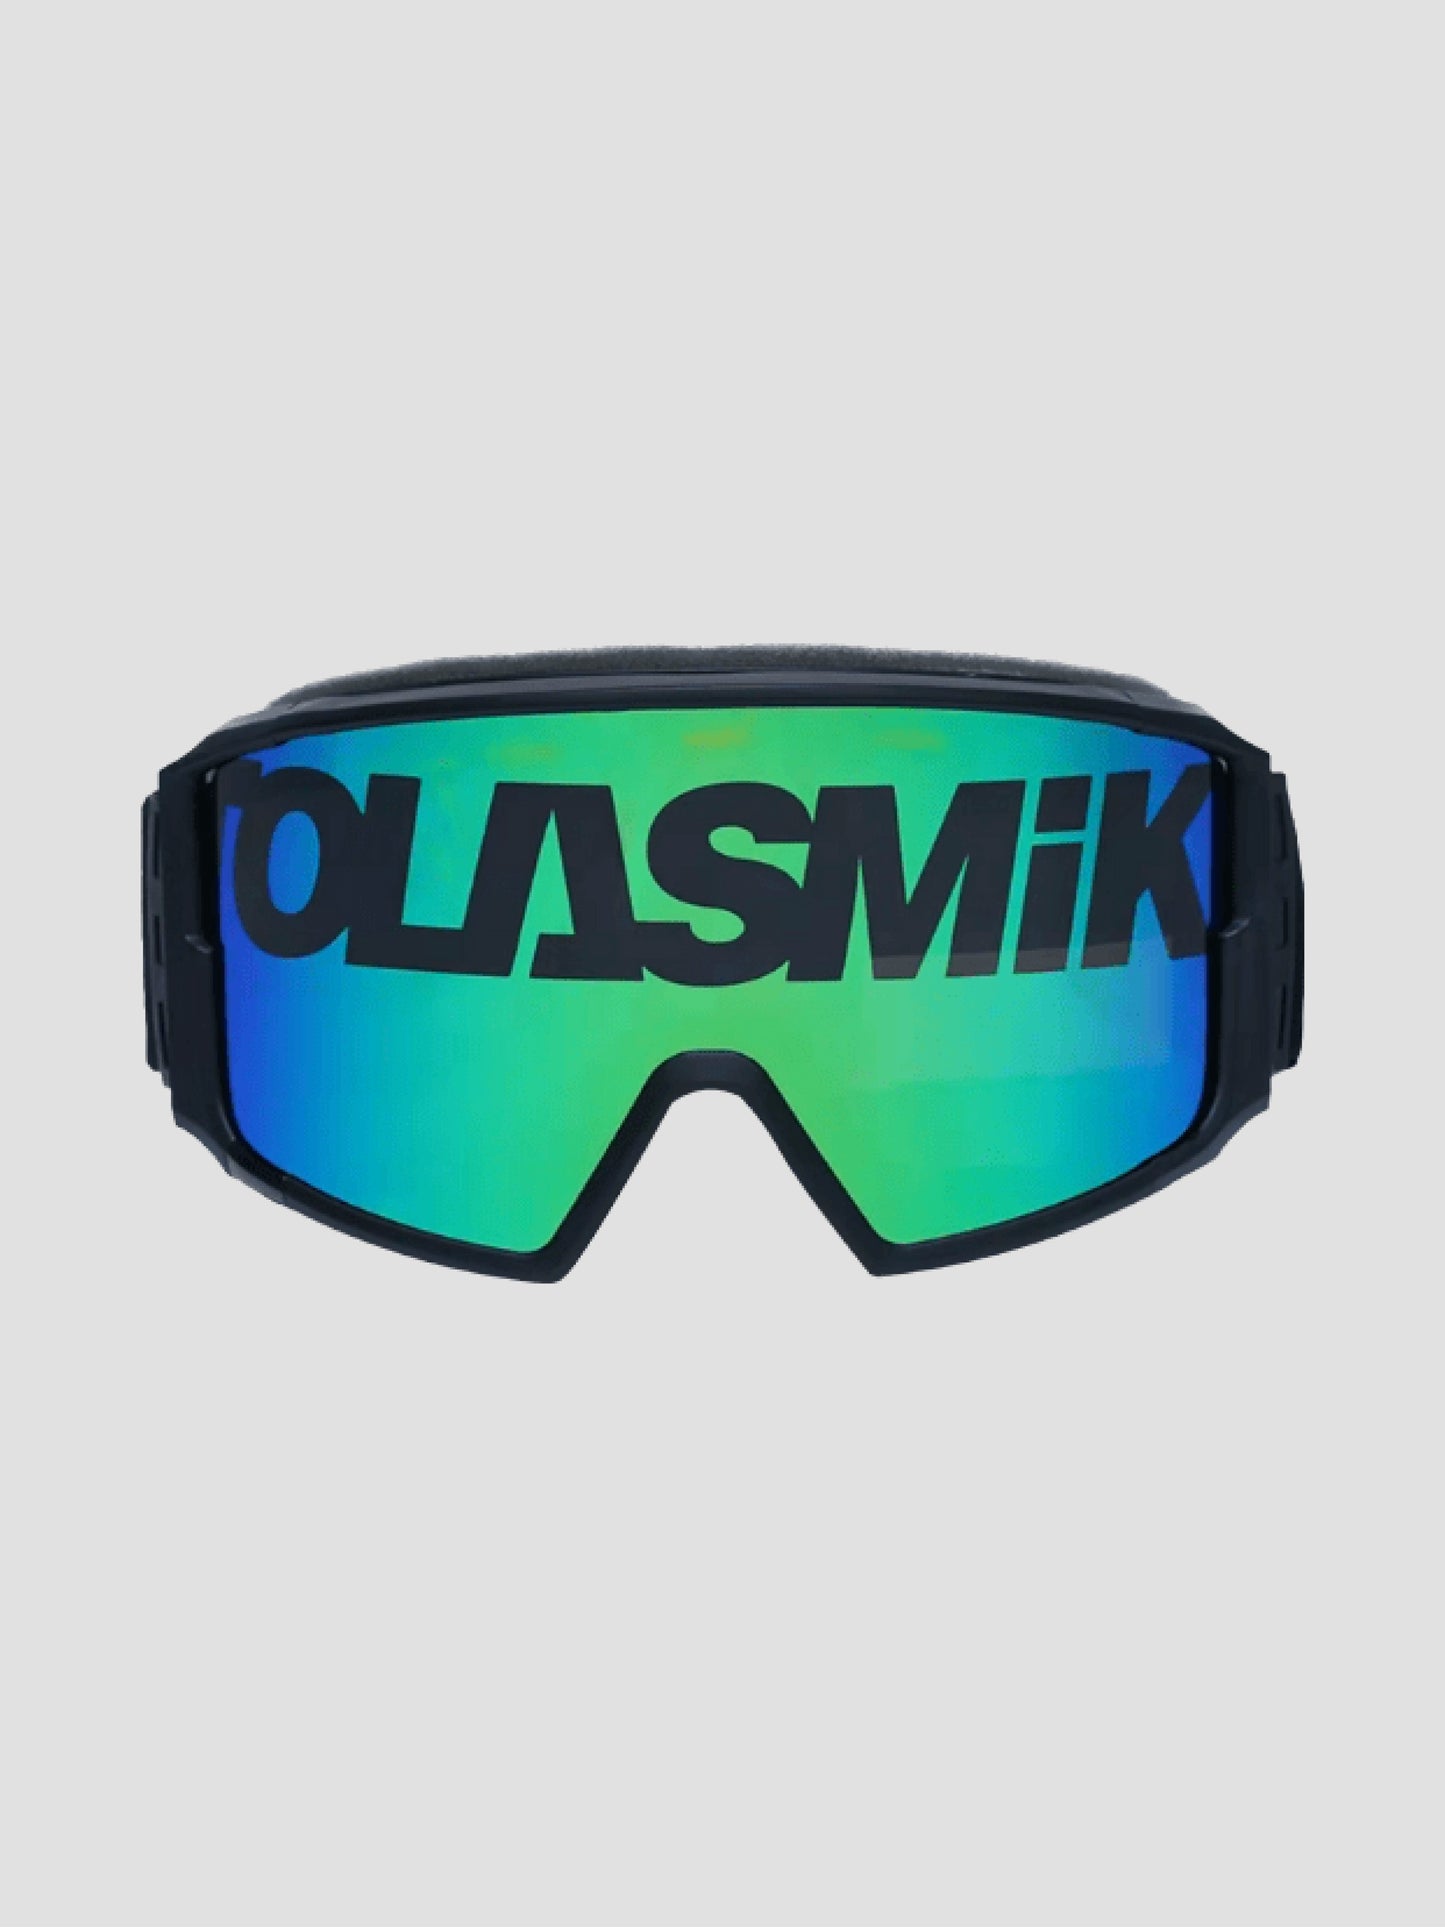 Tolasmik Magnetic Snow Goggles Classics